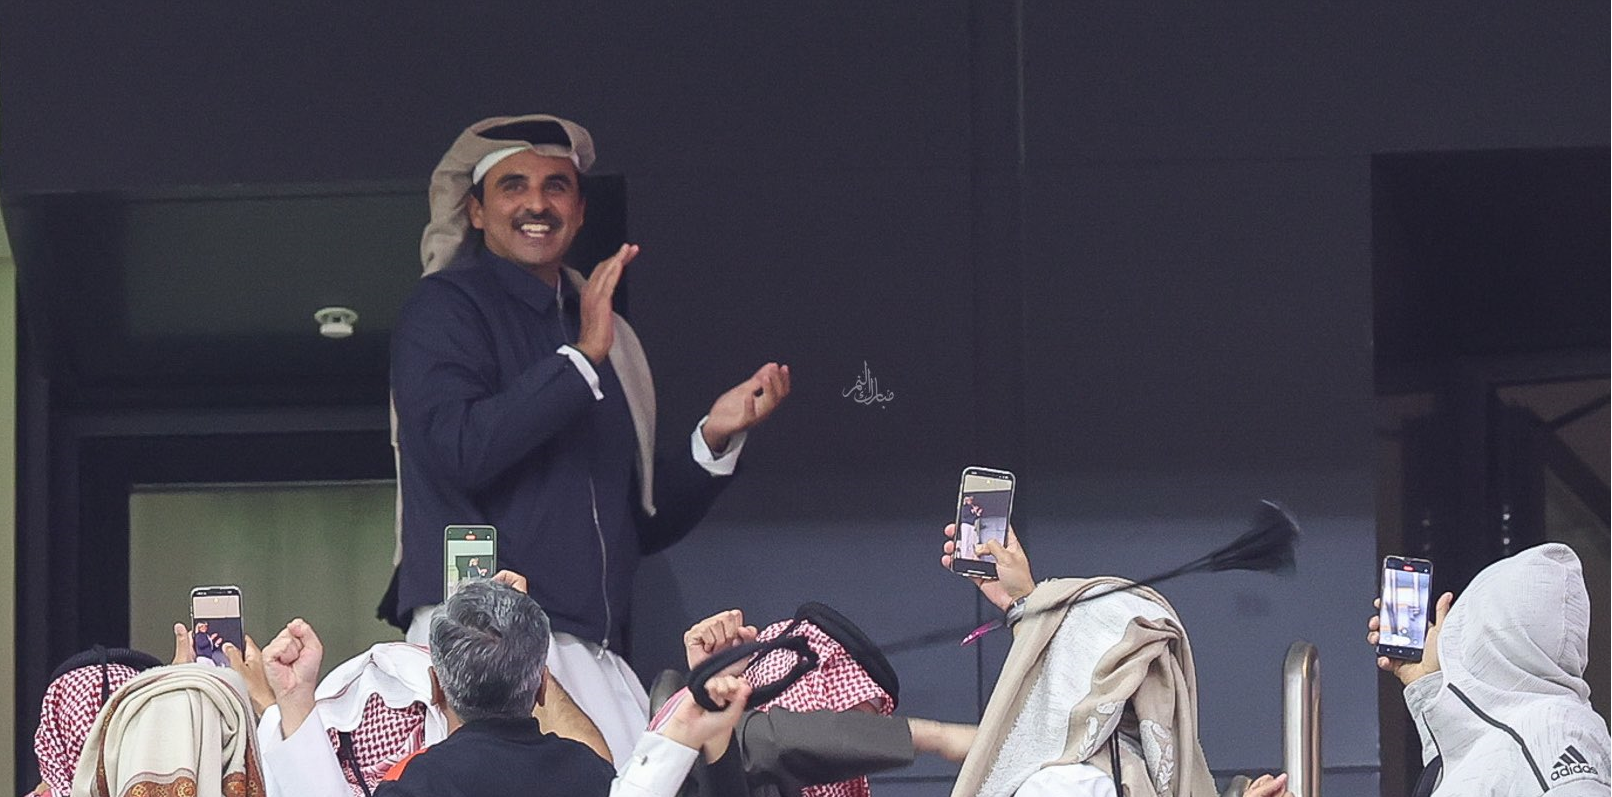 أمير قطر يقفز ويحتضن ابنته فرحا بتأهل العنابي لنصف نهائي كأس آسيا